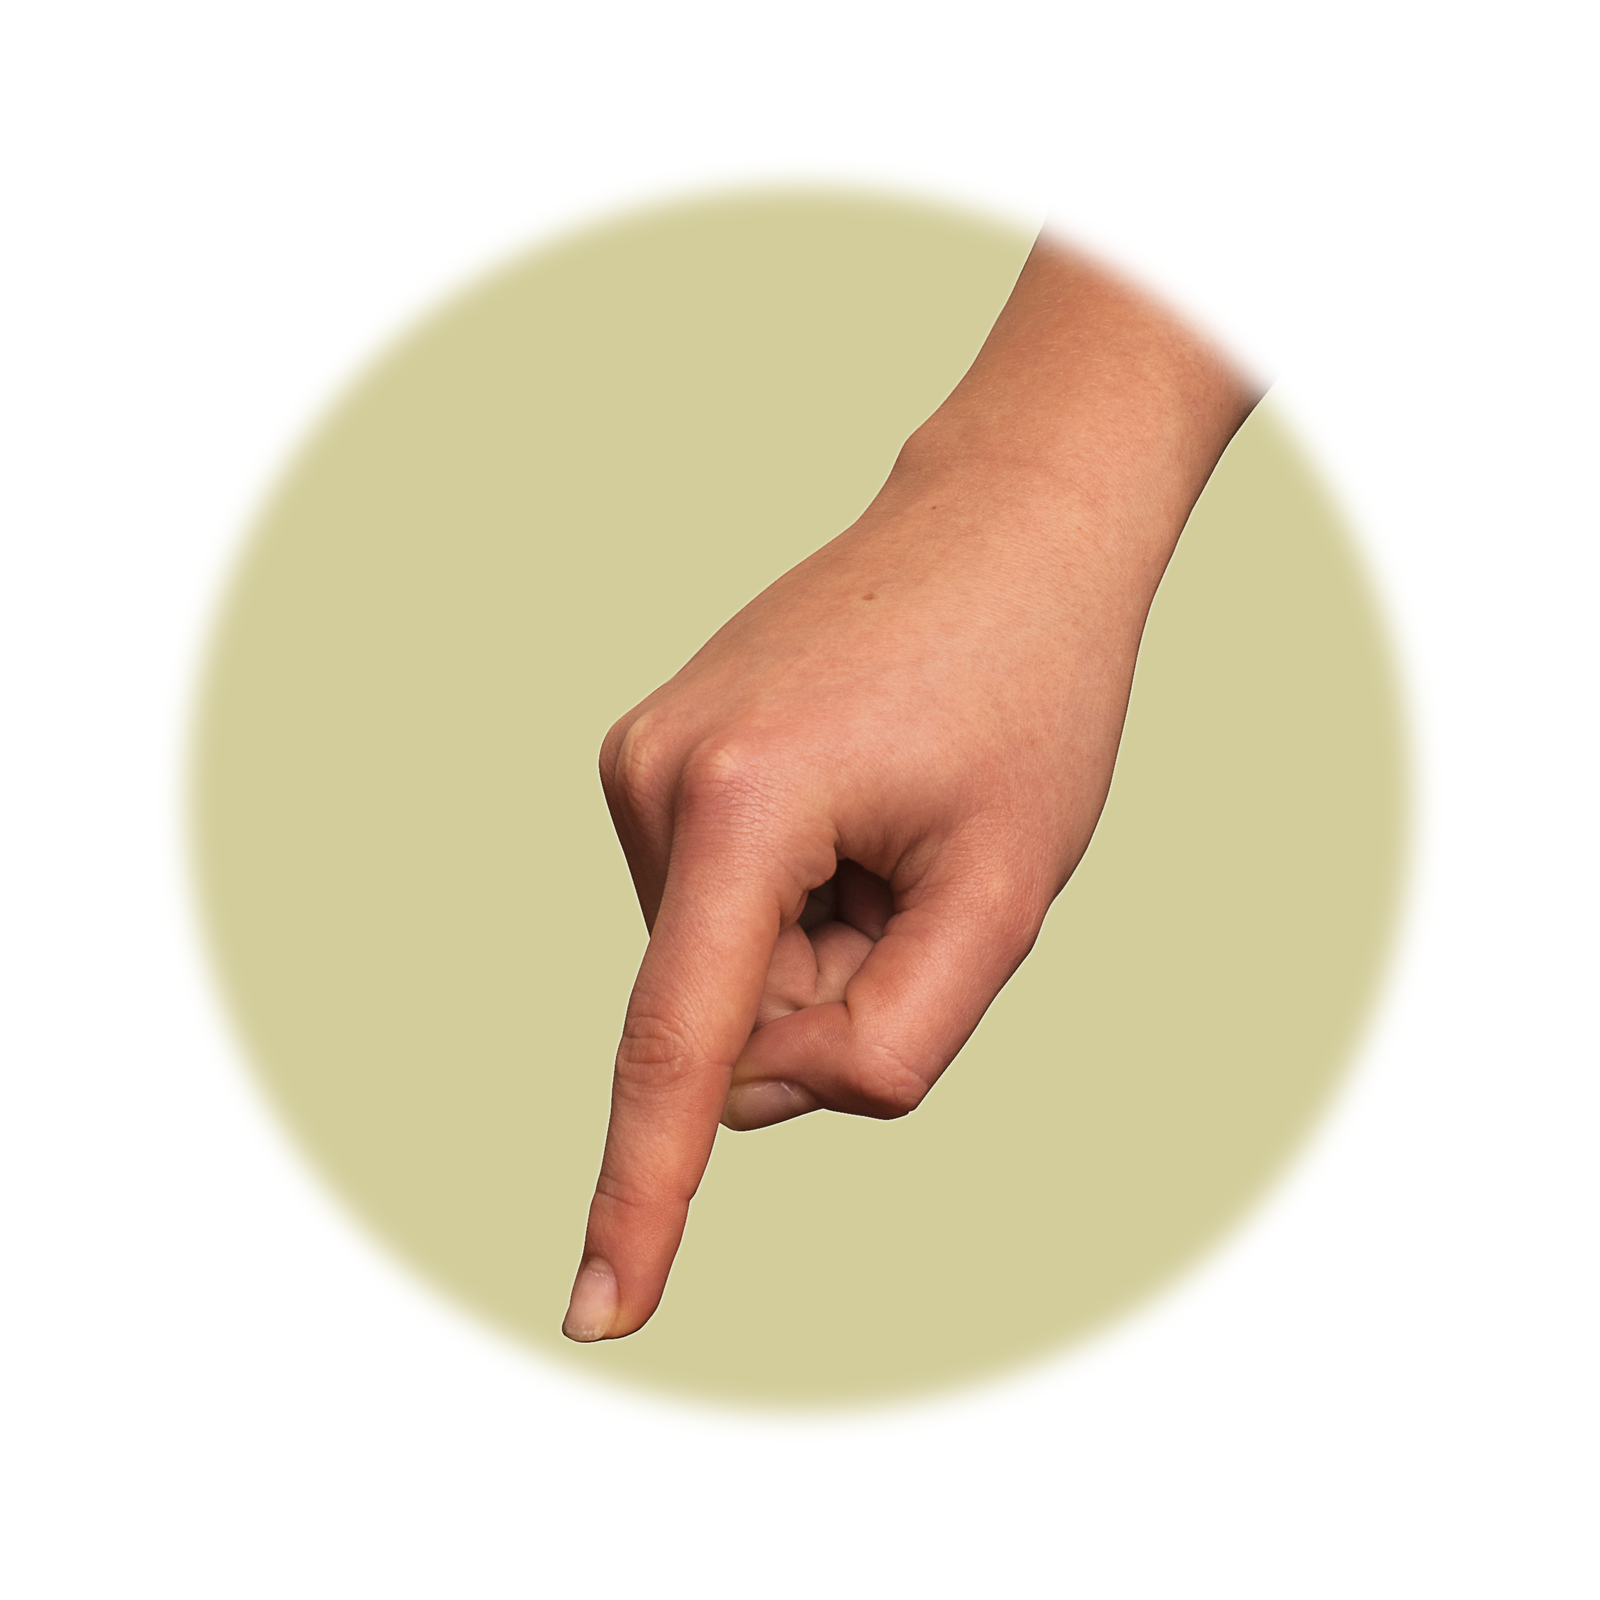 Fotografia przedstawia zbliżenie ludzkiej dłoni zaciśniętej w pięść i z wystawionym palcem wskazującym. Całe ciało człowieka okryte jest skórą będącą narządem dotyku. Pozwala ona, między innymi, na odbieranie wrażenia ciepła, zimna i bólu.